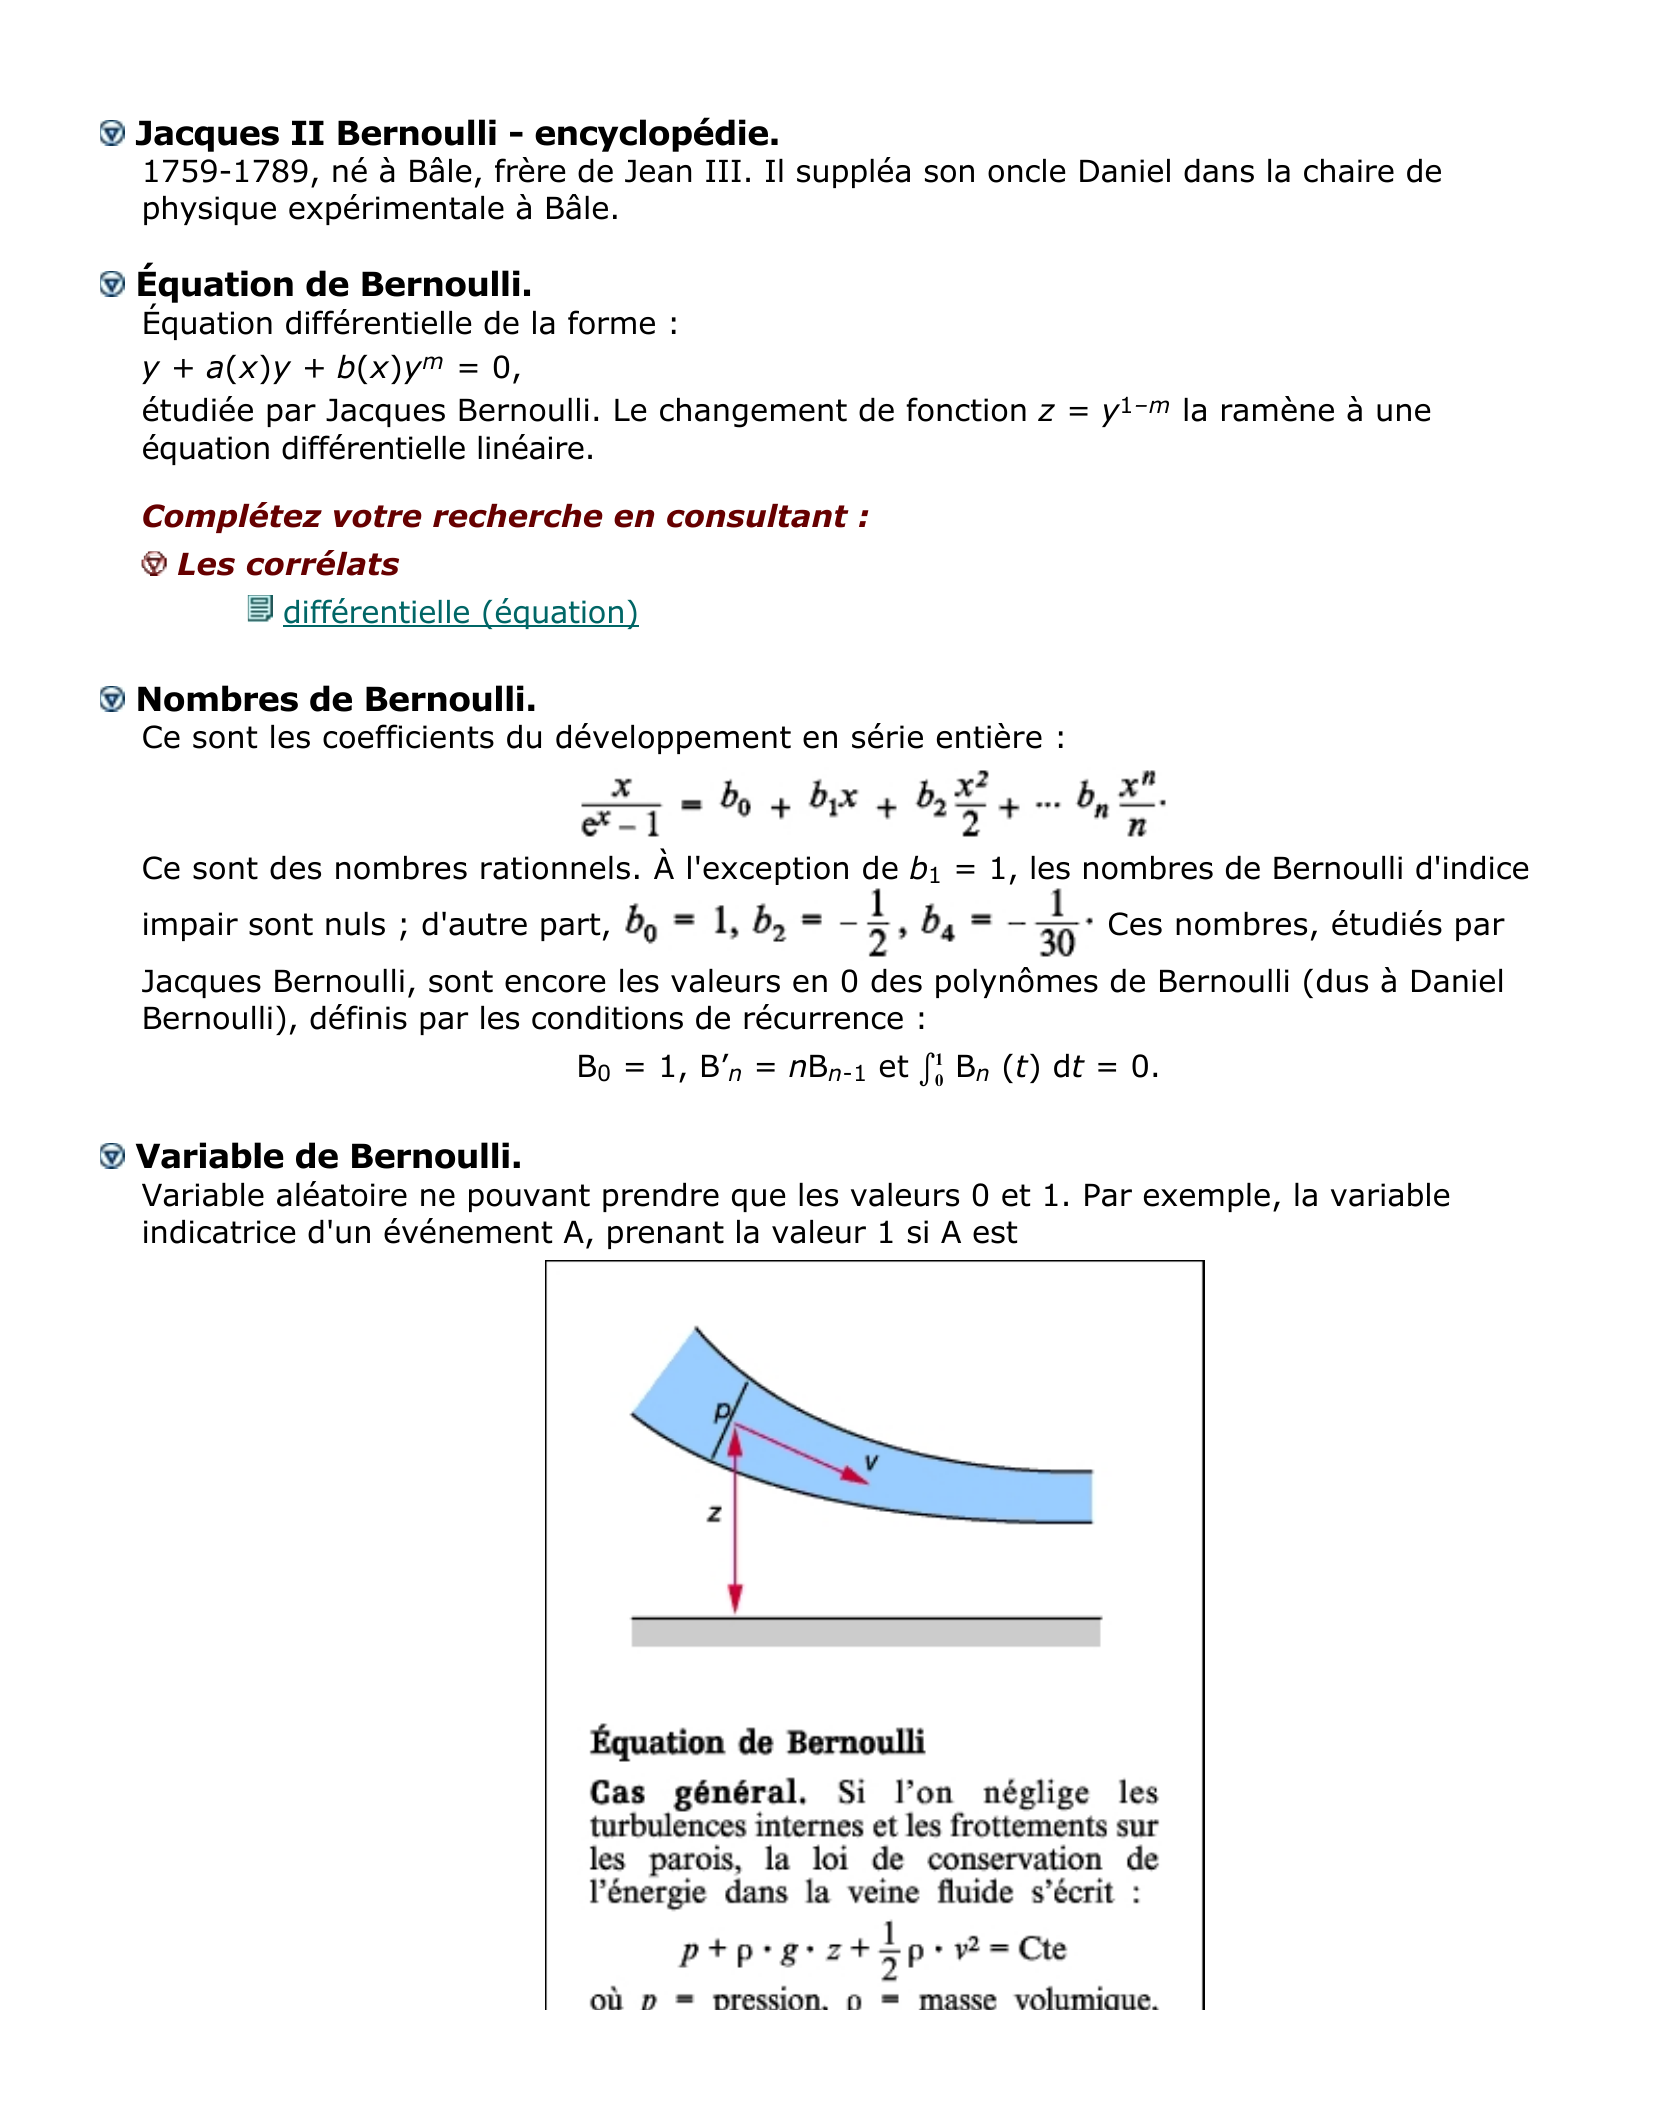 Prévisualisation du document Bernoulli - encyclopédie.